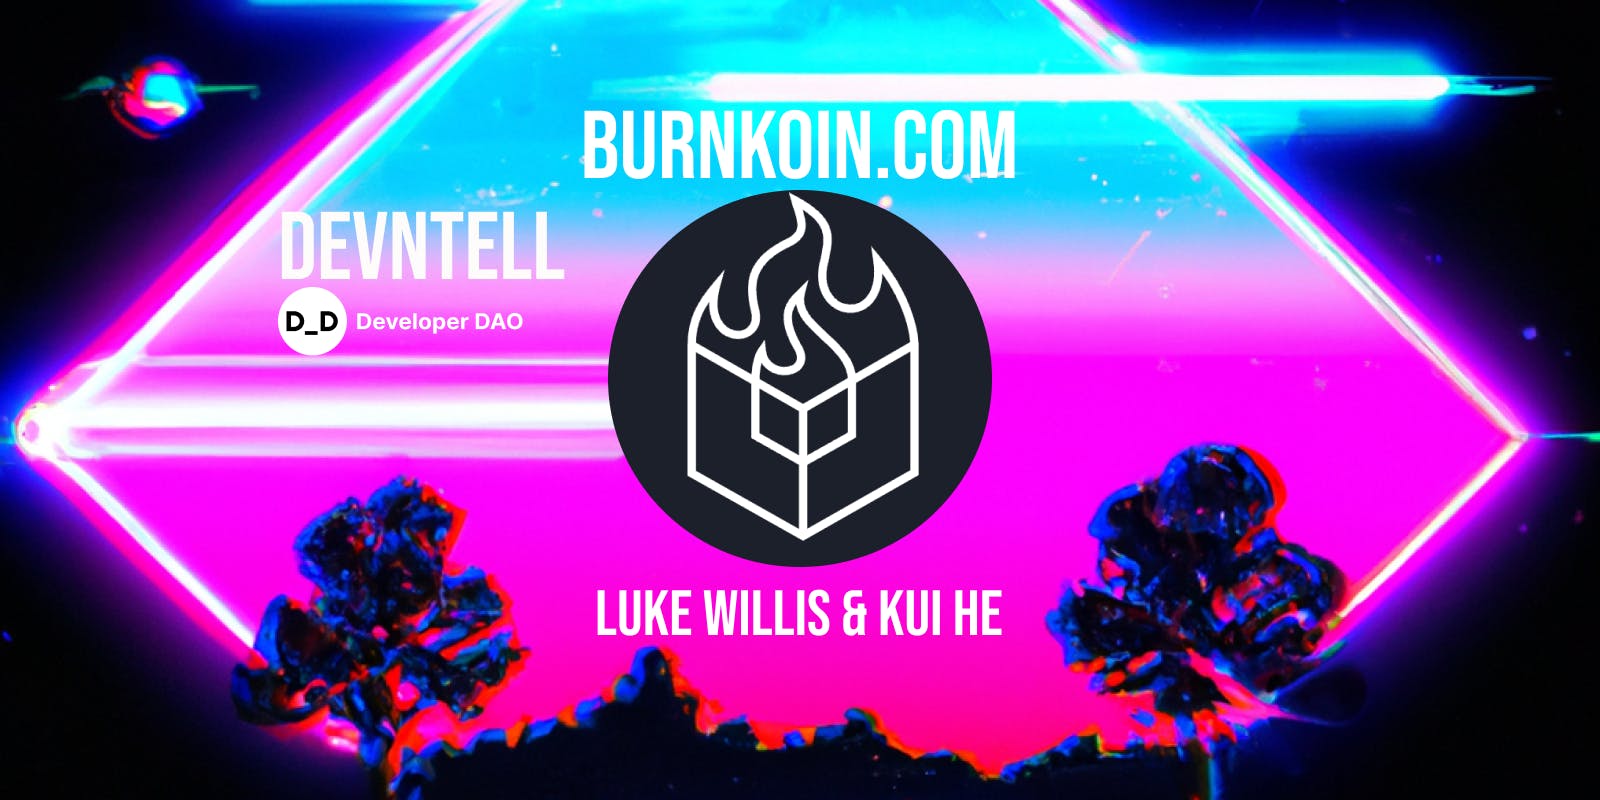 DevNTell - BurnKoin.com